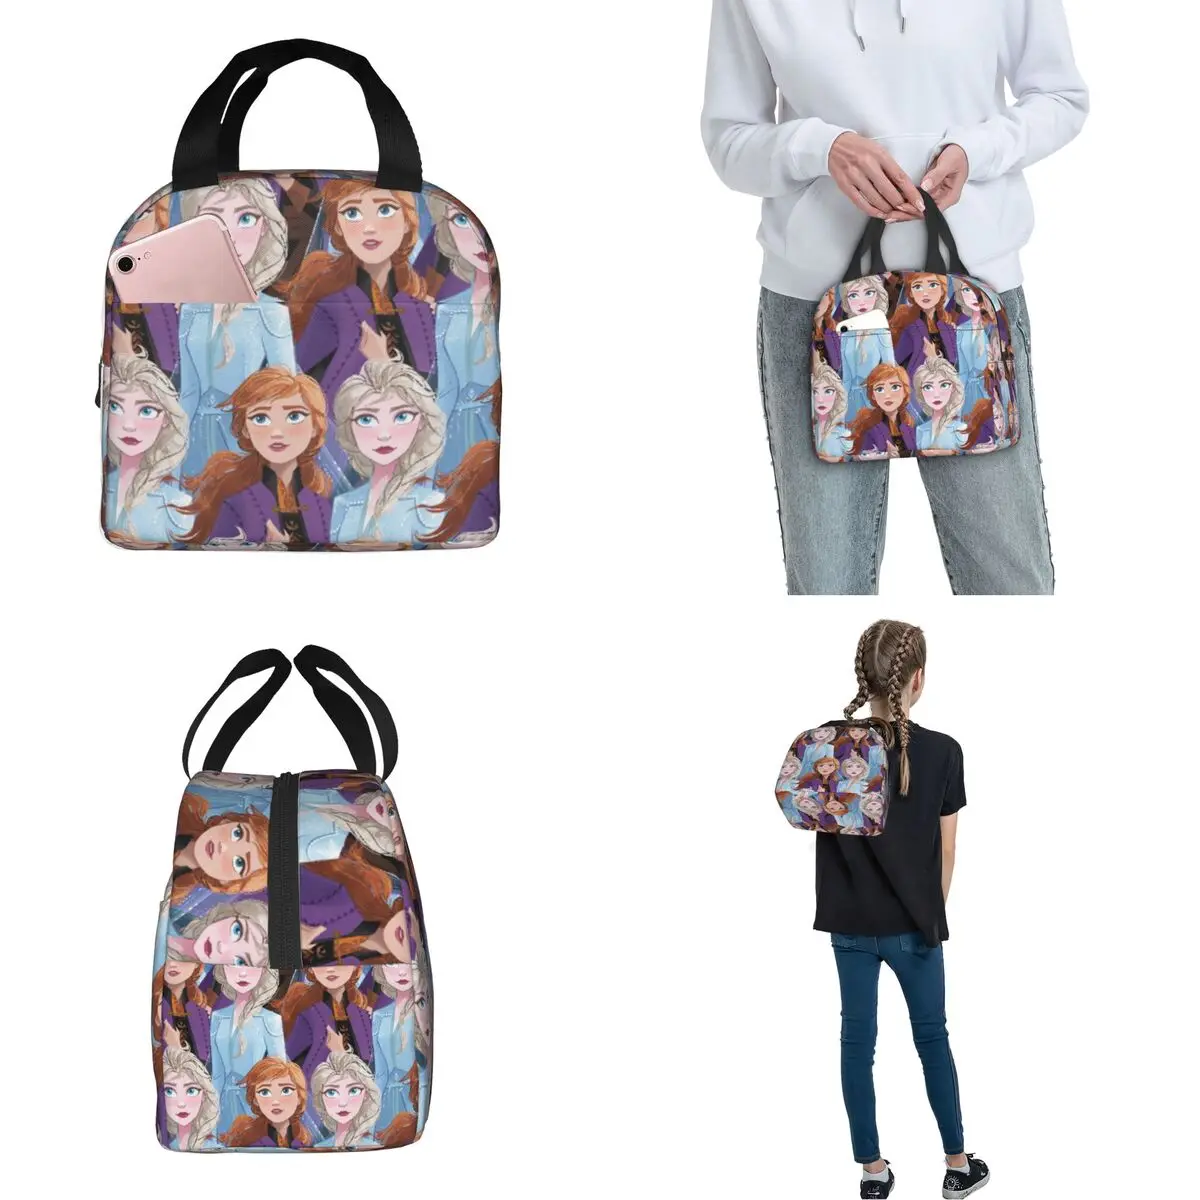 Disney Frozen Elsa Anna Изолированные сумки для ланча большой емкости Многоразовая сумка-холодильник Ланч-бокс Тотализатор Офис Путешествия Мужчины Женщины . ' - ' . 2